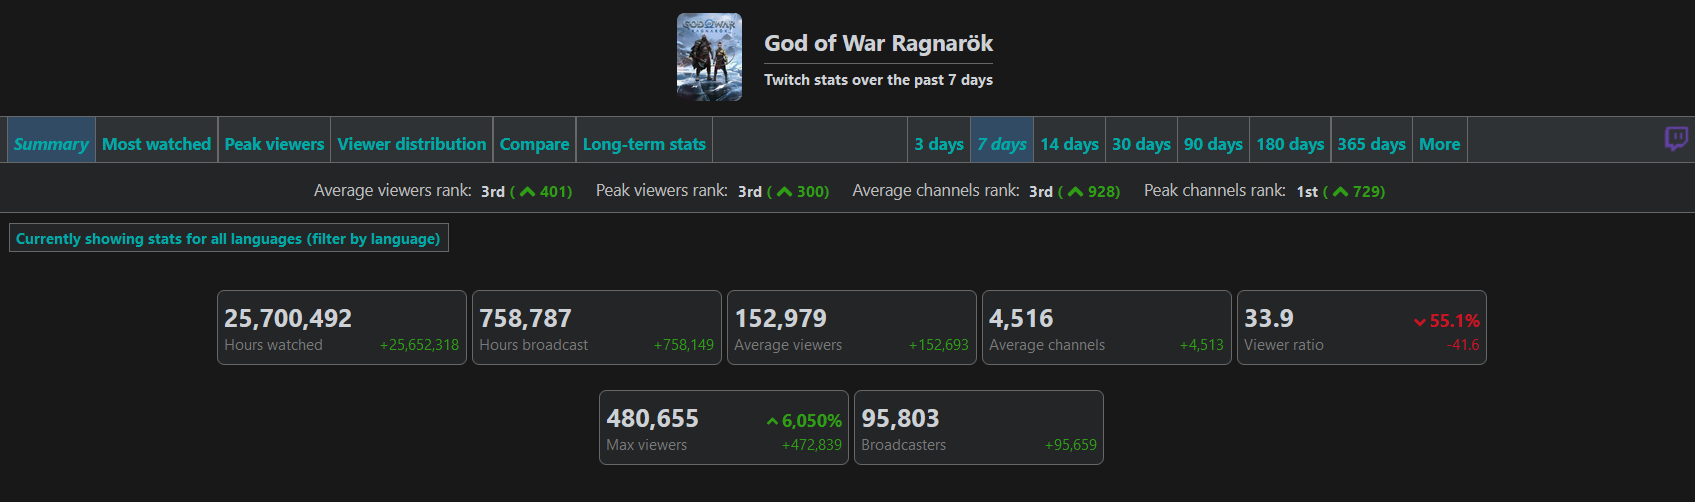 480 Tausend Zuschauer und 22 Millionen Sehstunden: God of War Ragnarok-Statistiken auf Twitch zeigen das Interesse der Fans an dem Spiel-2